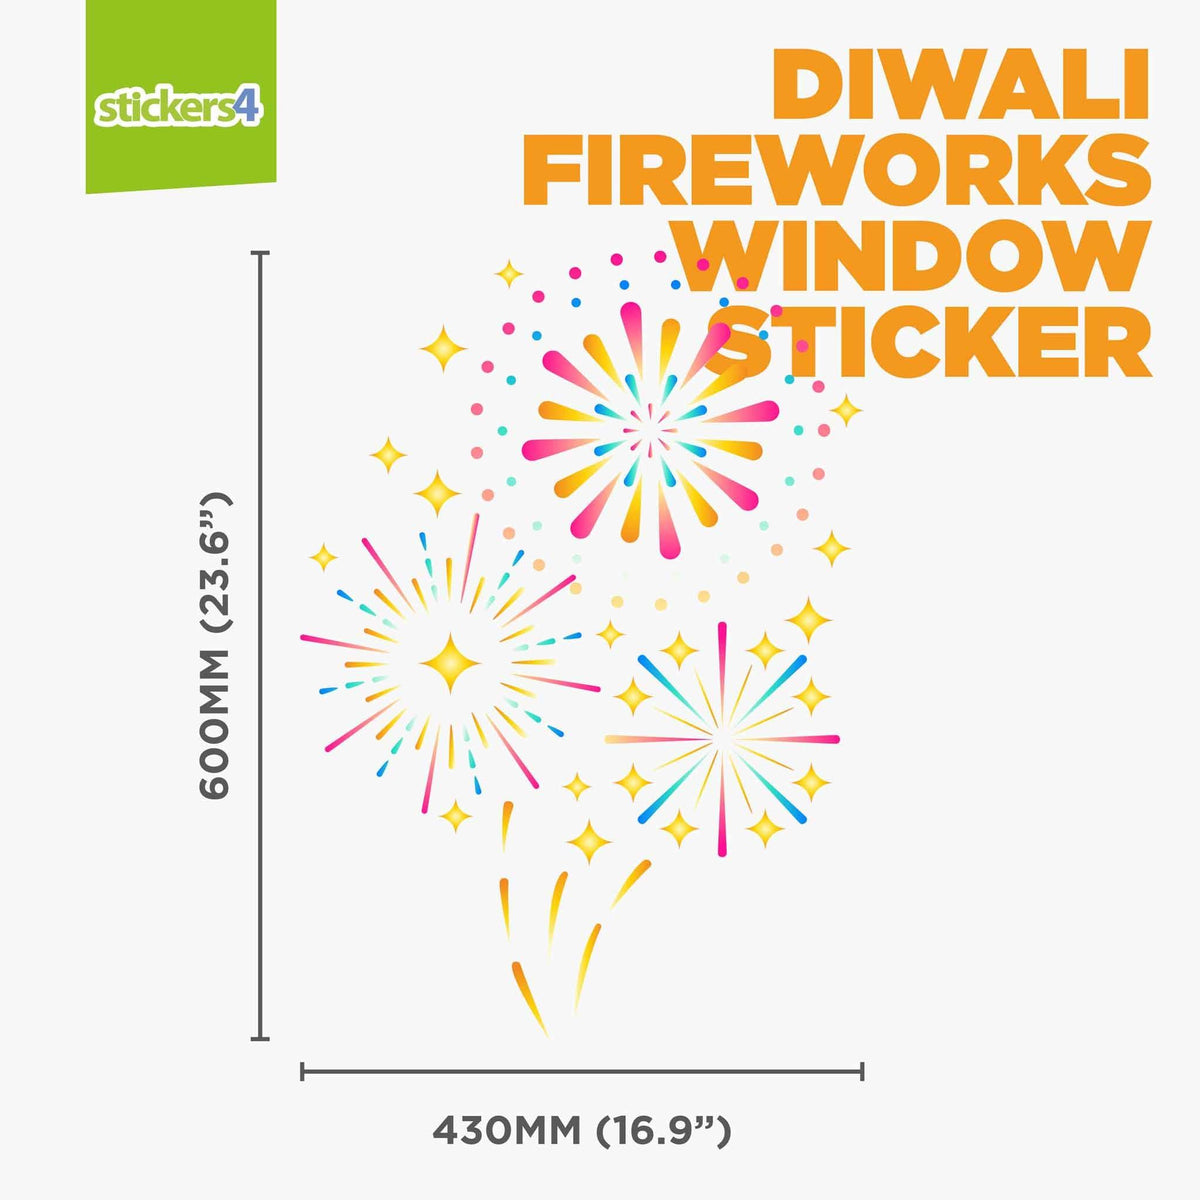 Diwali Fireworks Window Sticker Diwali Window Displays